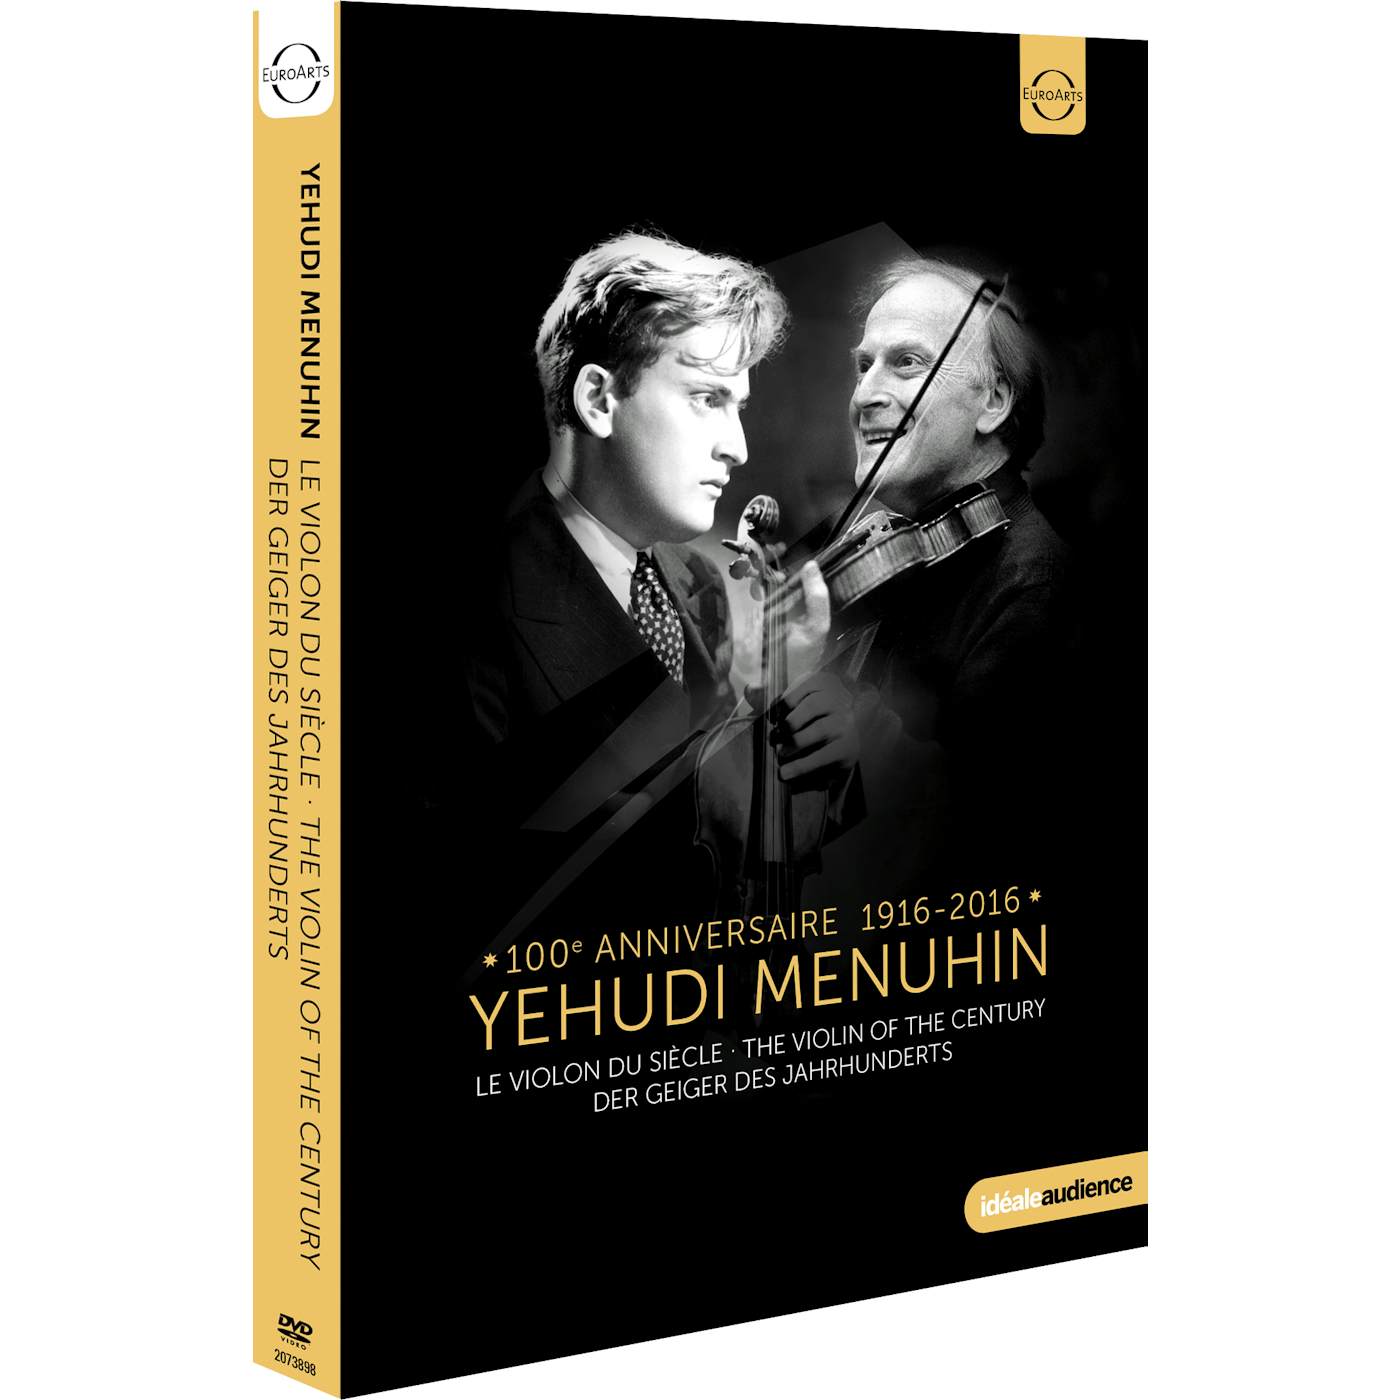 Yehudi Menuhin VIOLIN OF THE CENTURY DVD